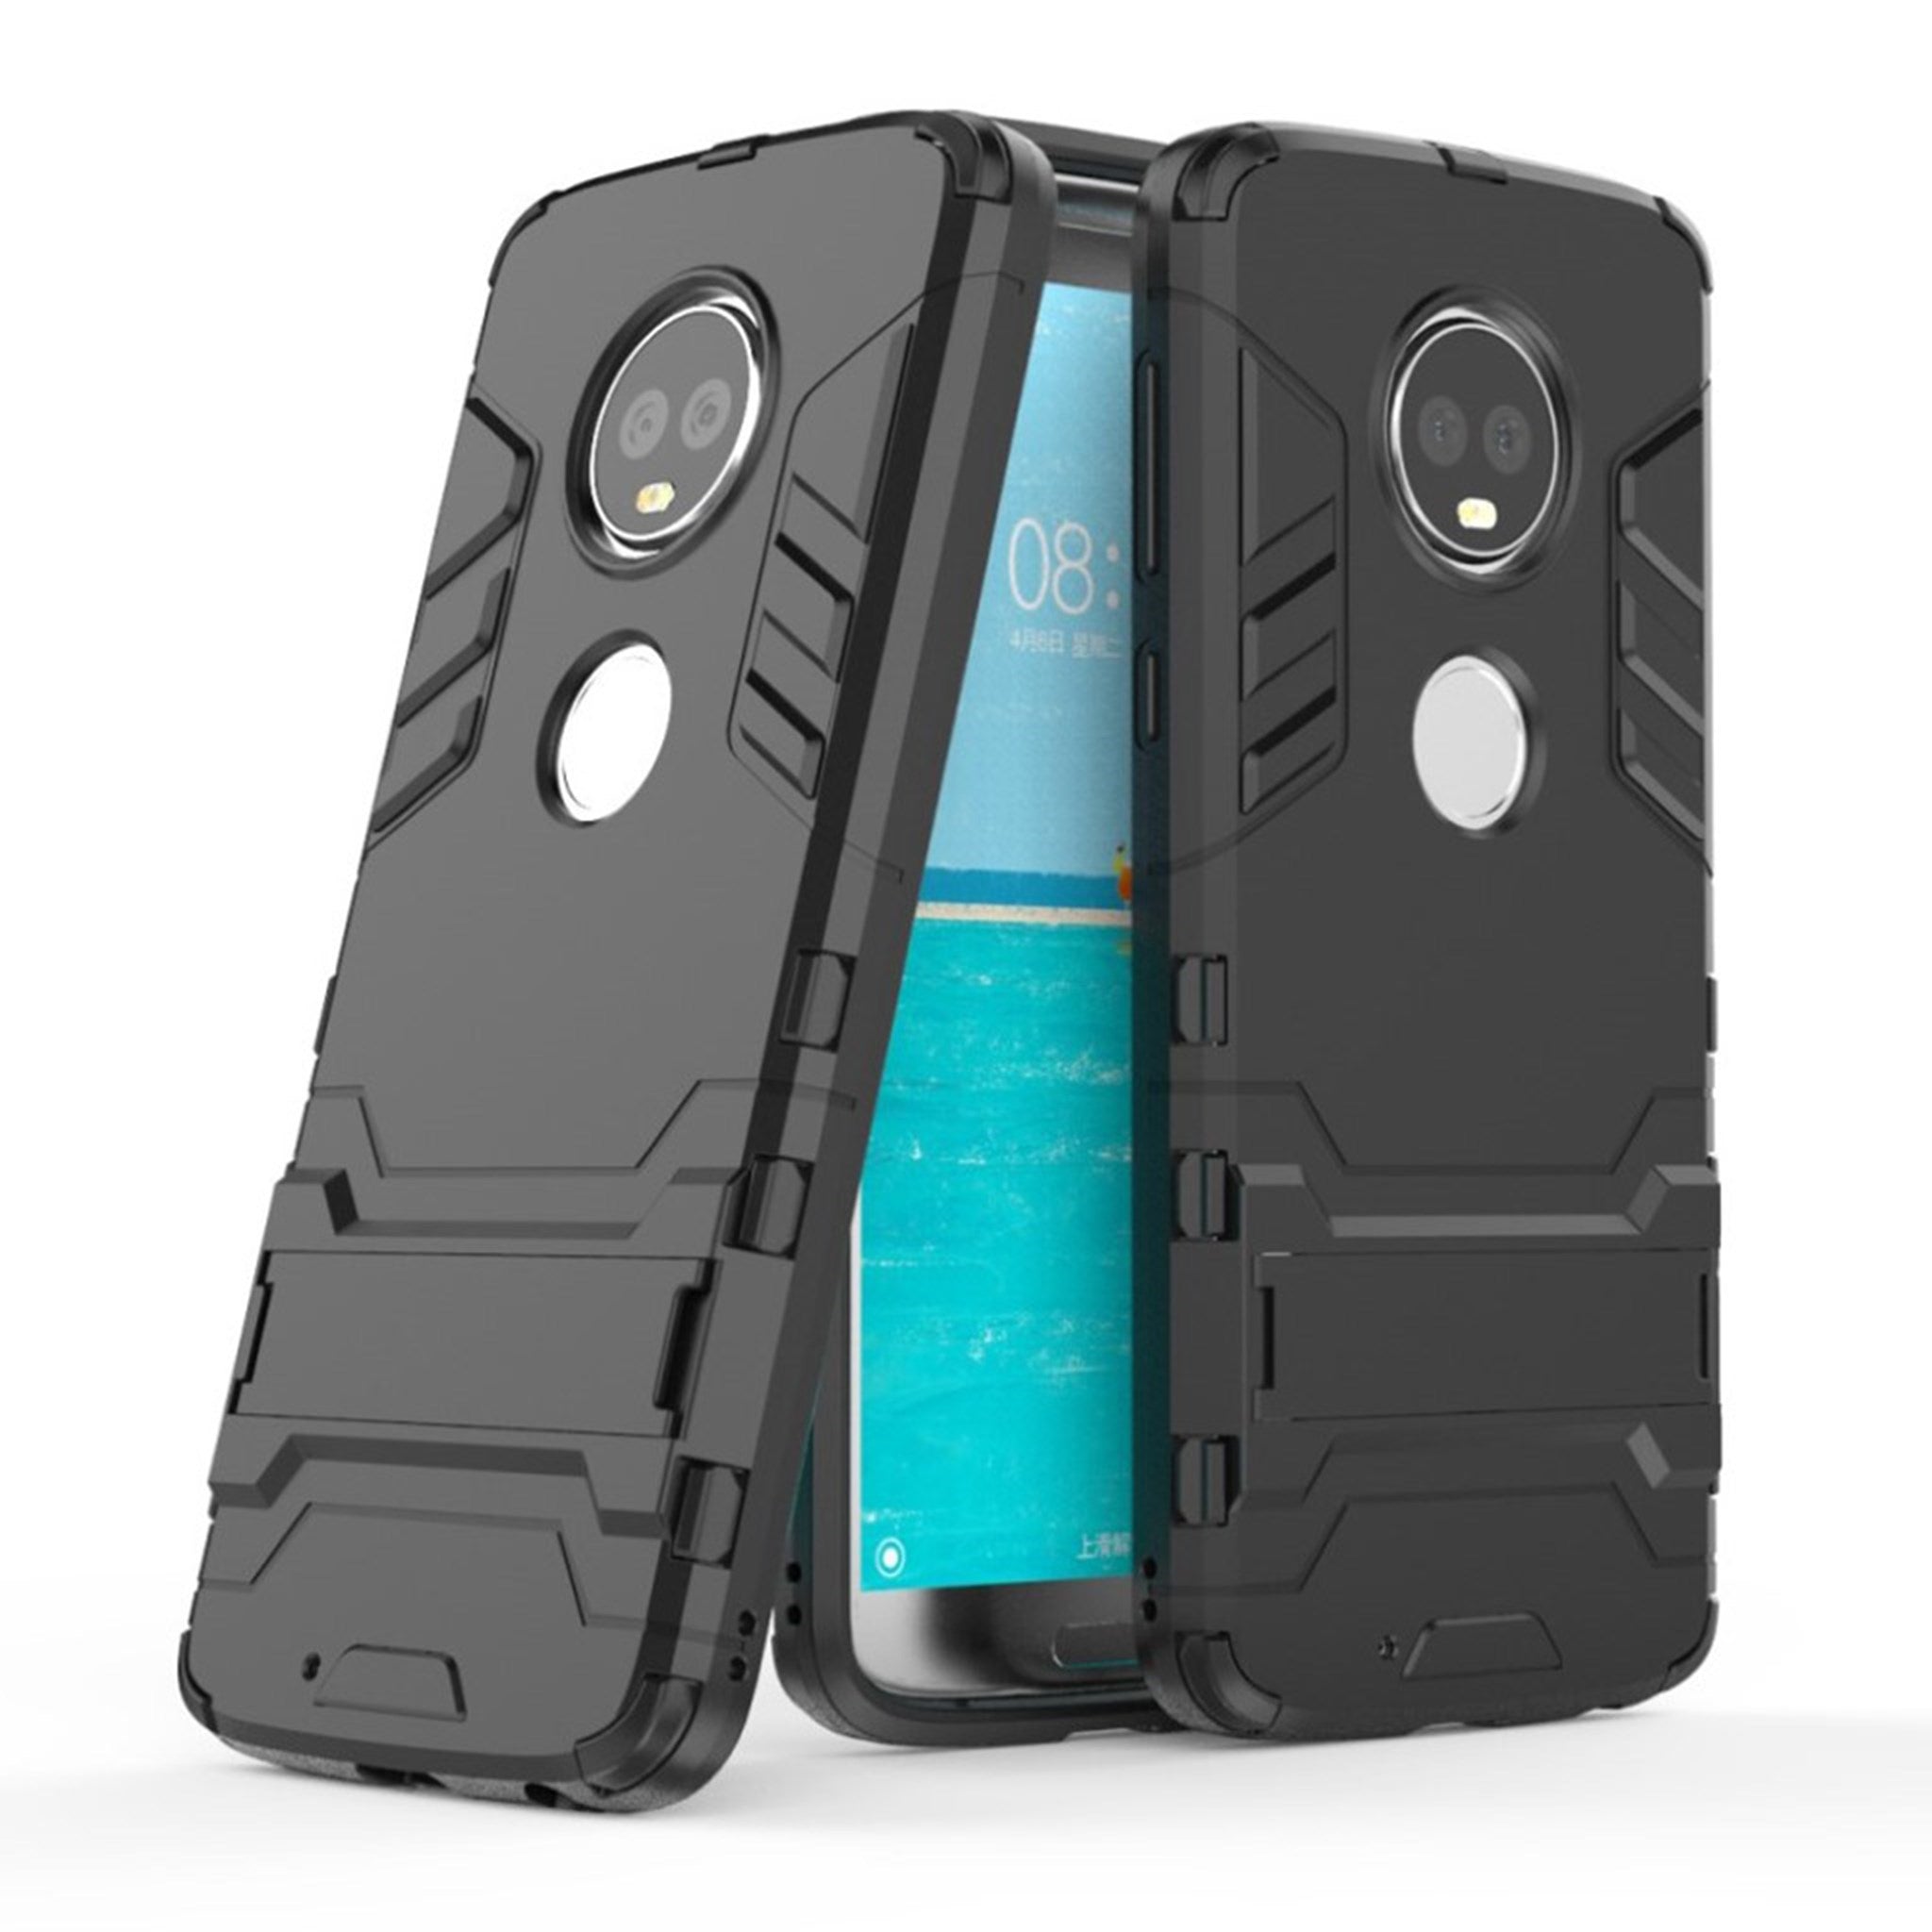 Motorola Moto G6 hybrid case - Black